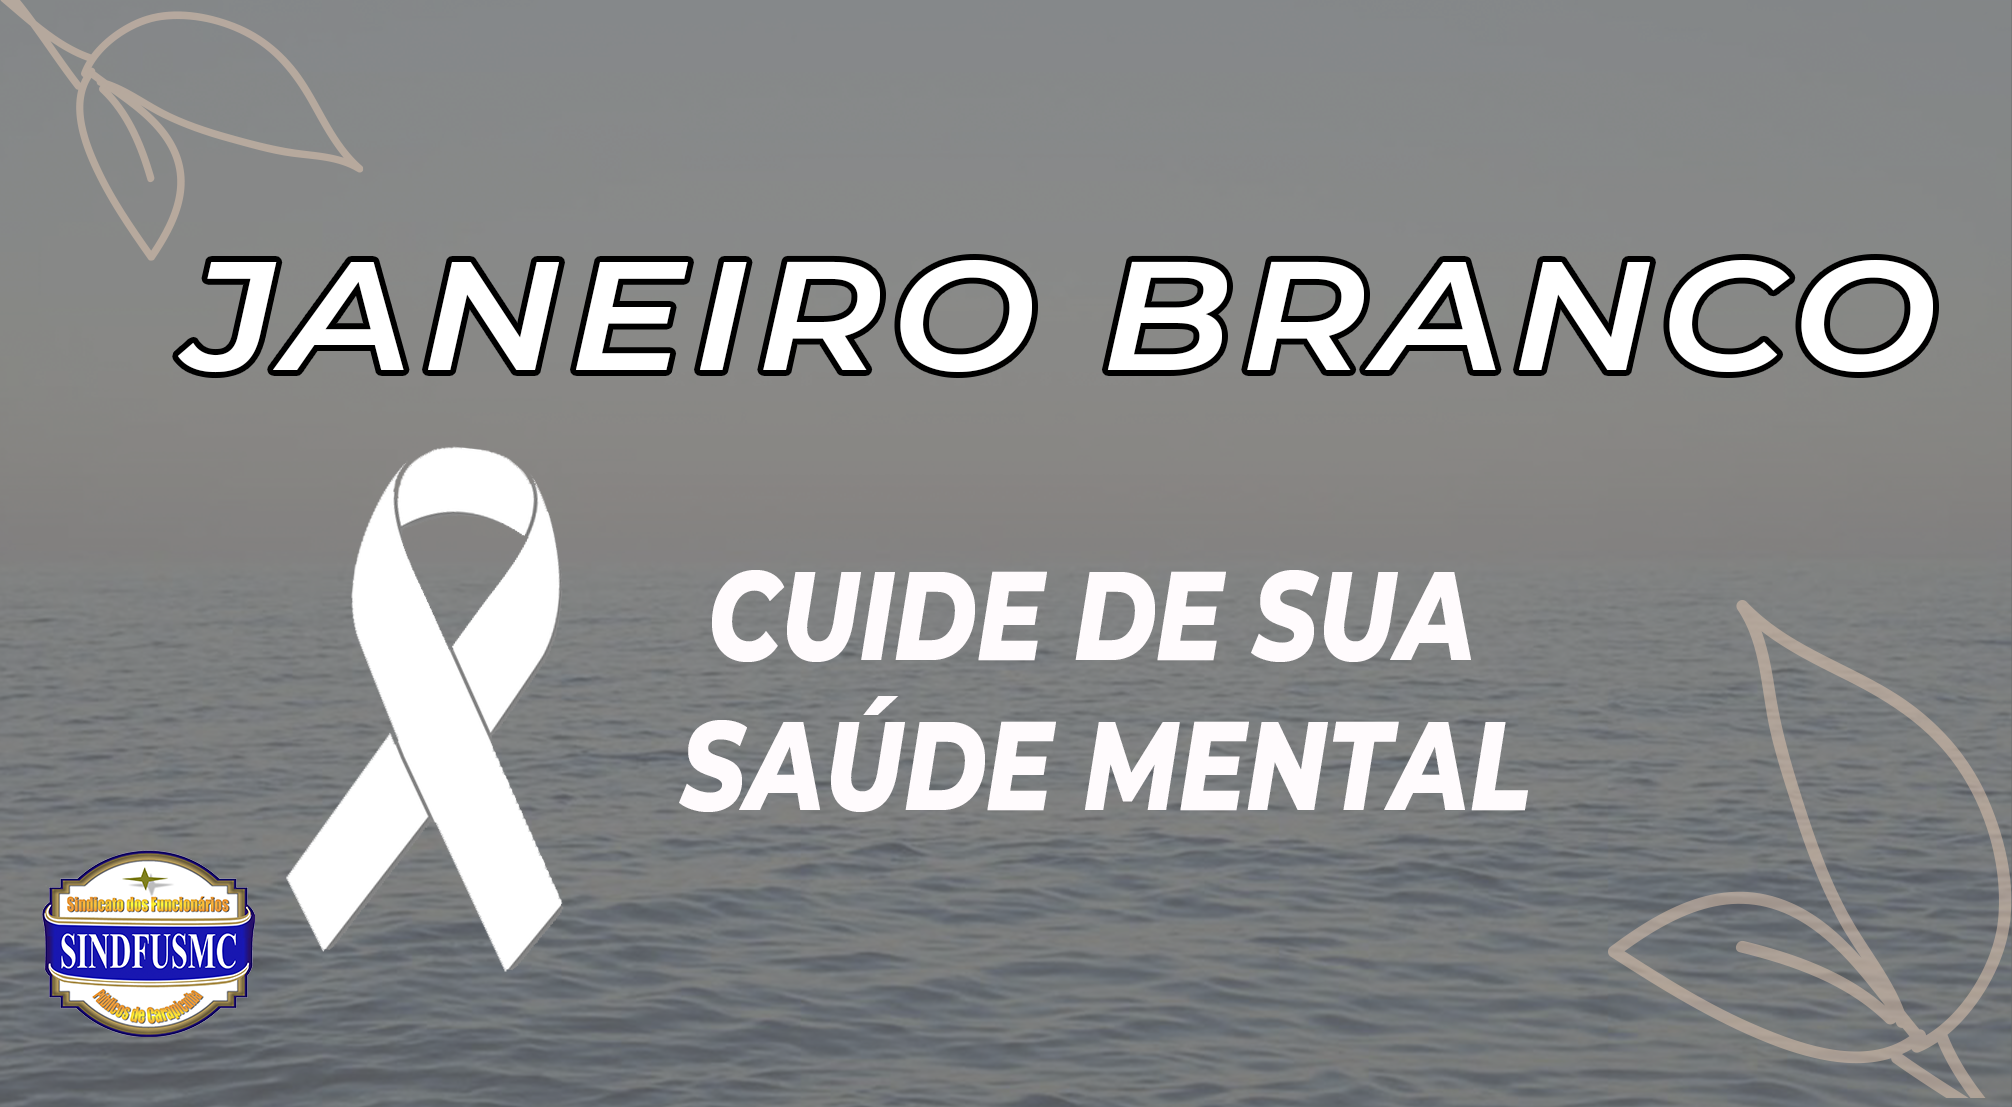 Janeiro Branco | Campanha destaca cuidados com a saúde mental